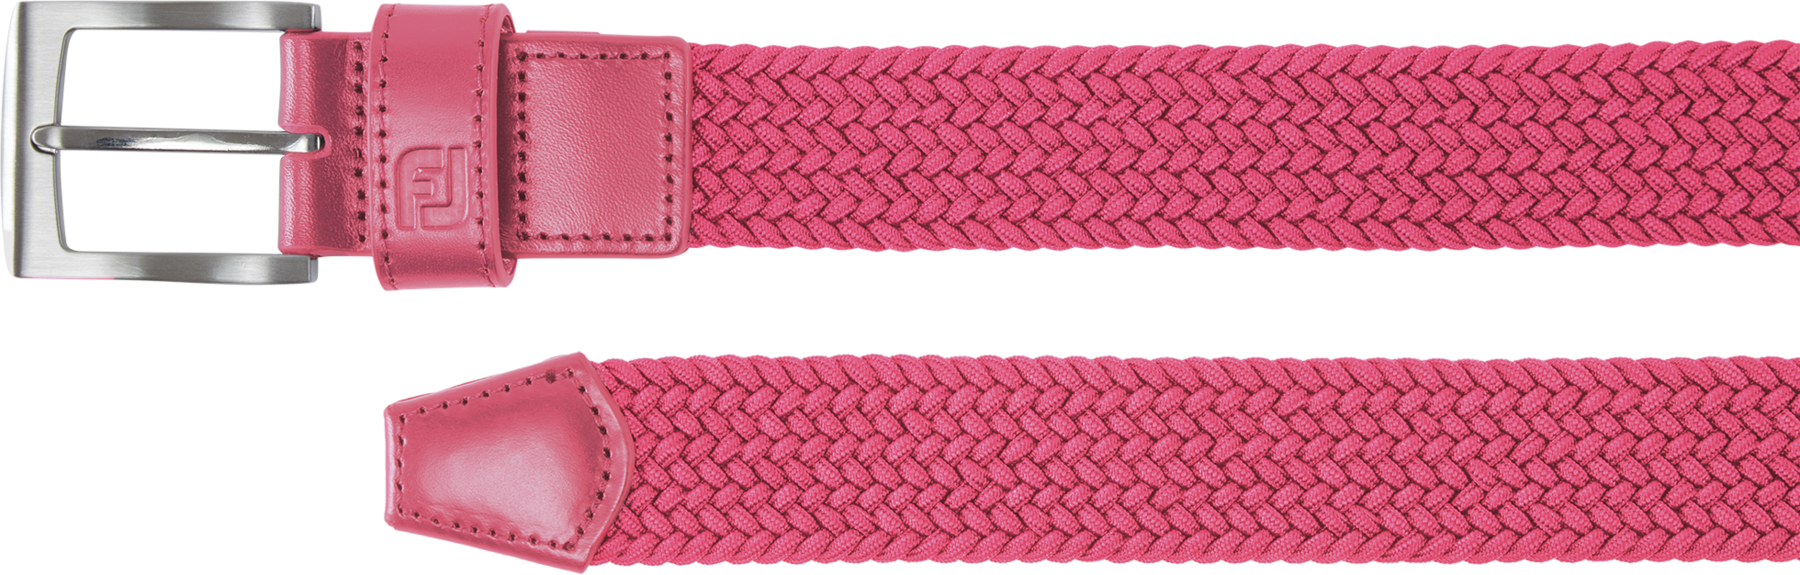 Belt Footjoy Braided Womens Belt Hot Pink Regular